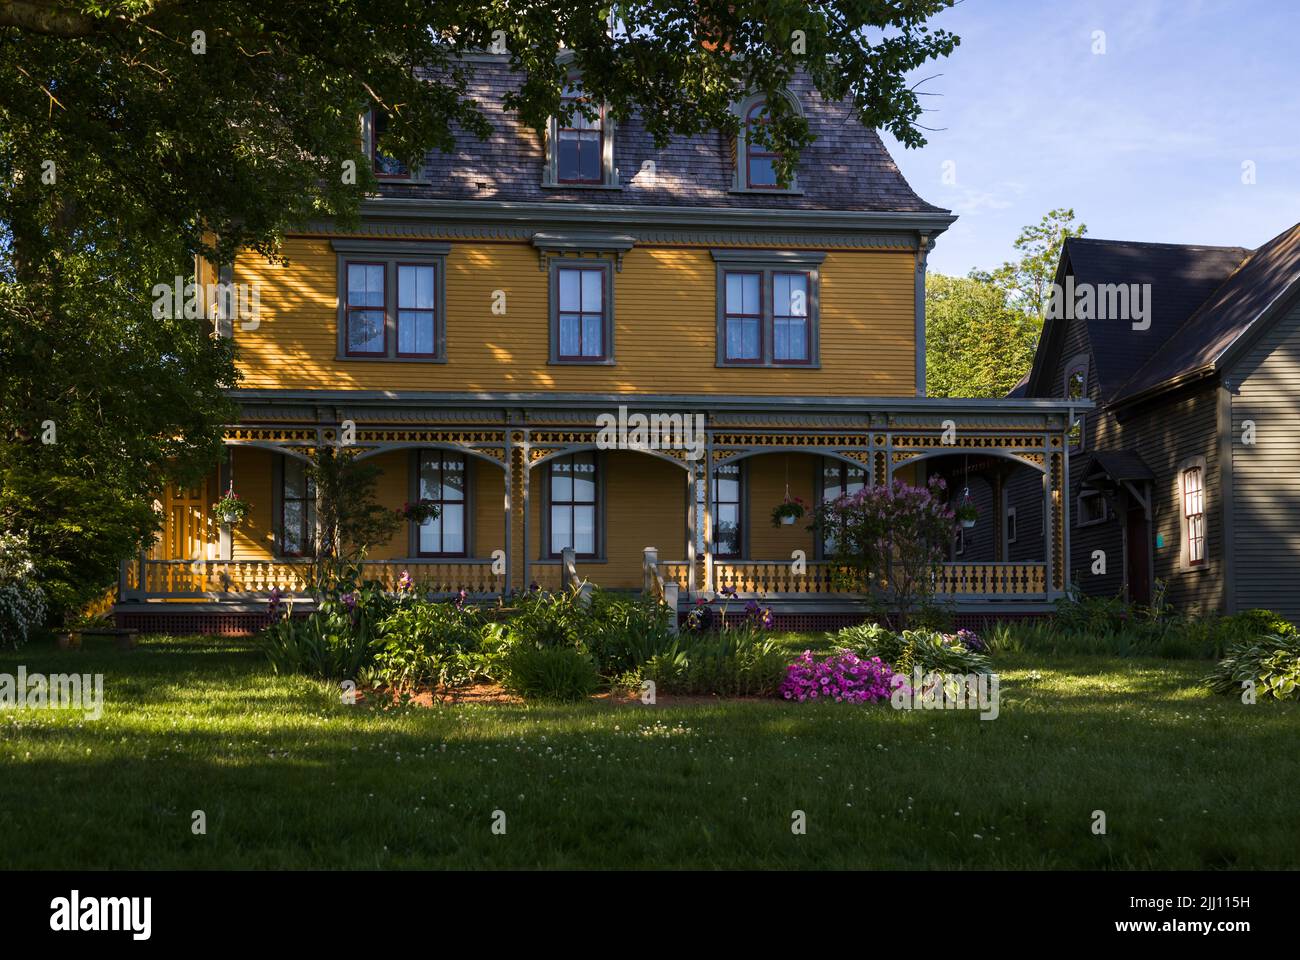 Maison historique Braconsfield - Charlottetown, Île-du-Prince-Édouard, Canada - maison victorienne en bois avec patio Banque D'Images